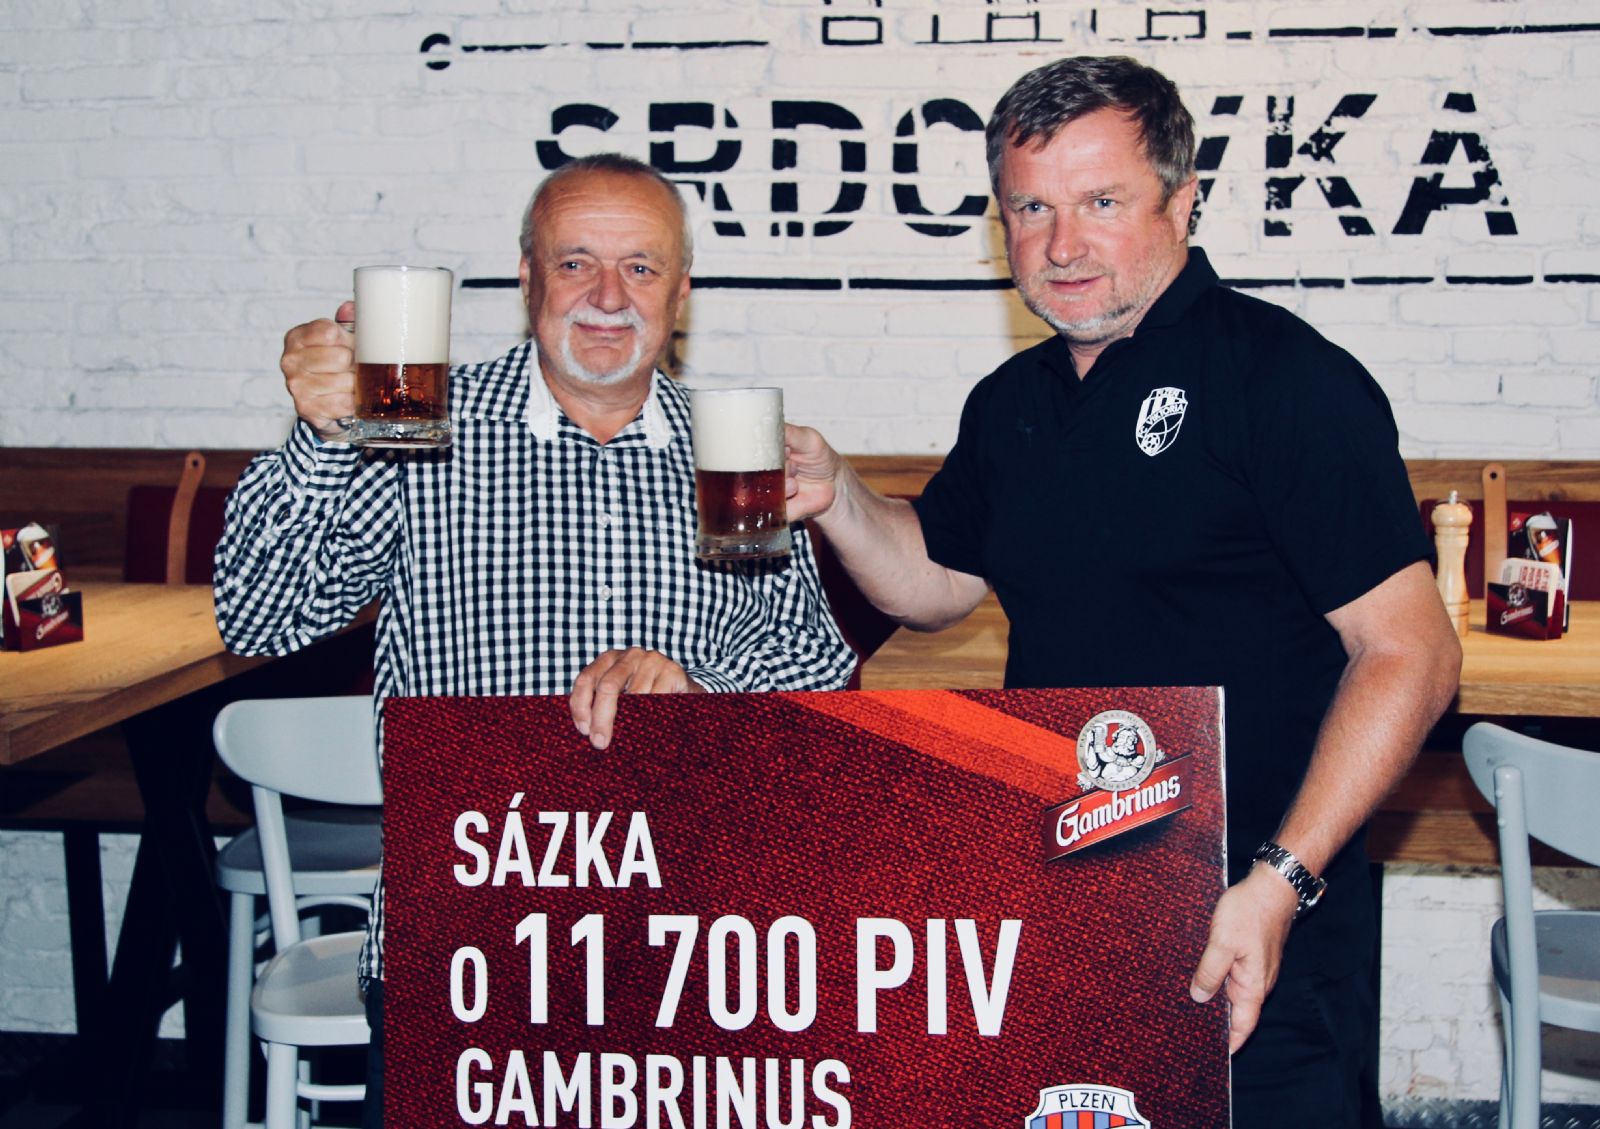 Sázka s Gambrinusem: Za postup ze skupiny 11 700 piv pro fanoušky